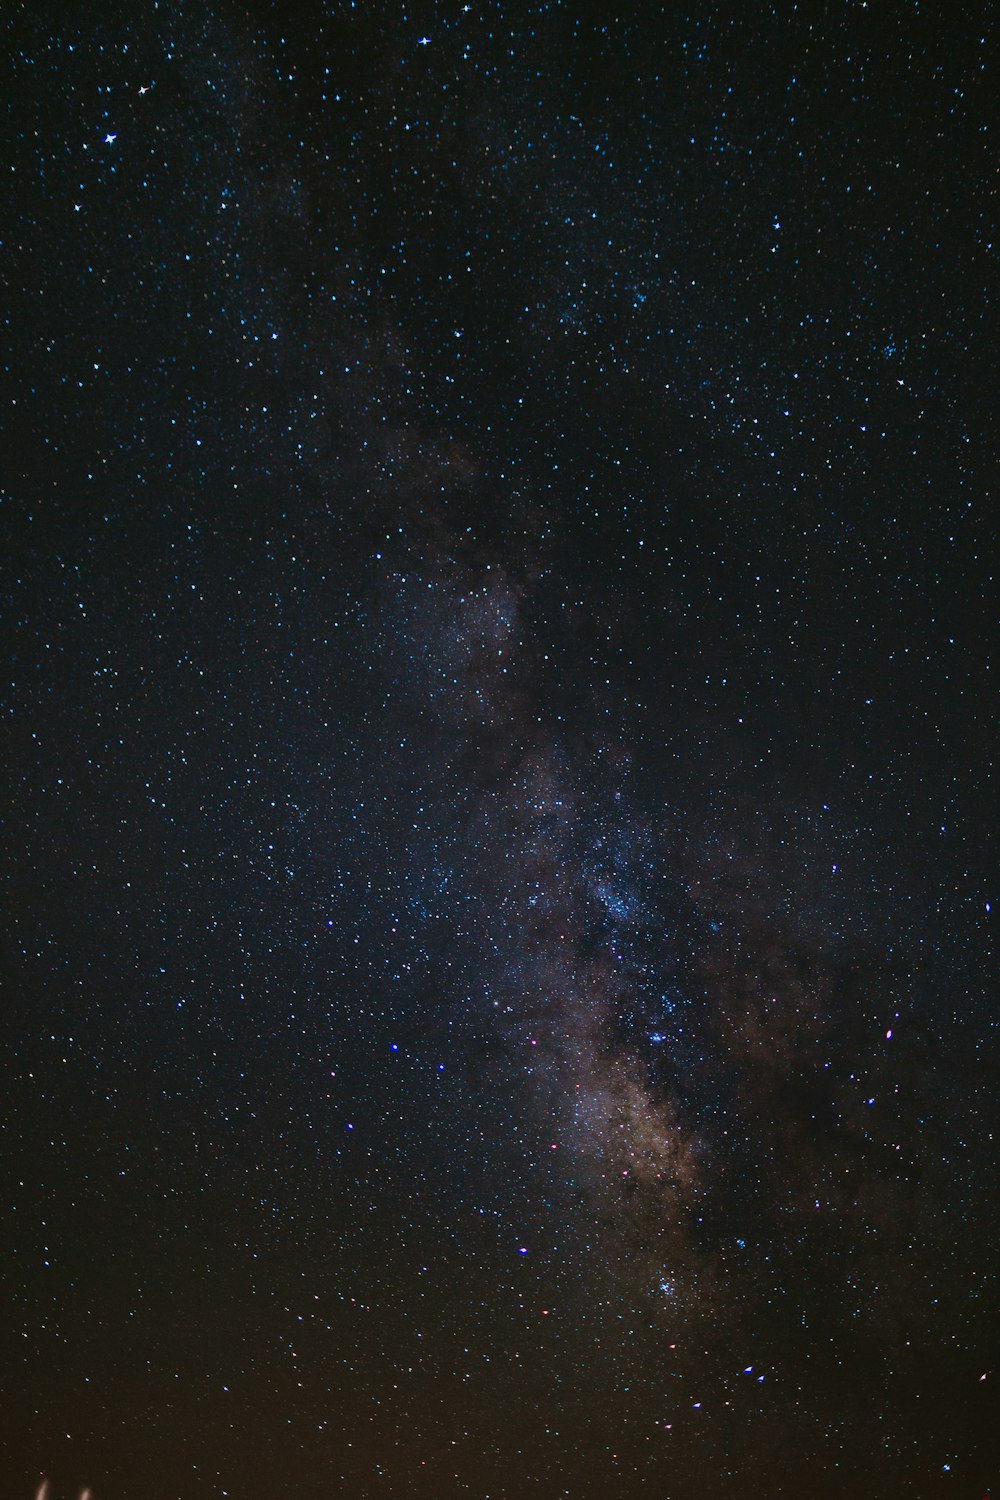 Hãy trải nghiệm bầu trời đêm đẹp nhất qua loạt ảnh không gian đêm đầy mê hoặc. Những tia sao lấp lánh, vệt sáng đậm chất không gian sẽ khiến bạn say đắm trong từng khung hình. Khám phá những bí mật kỳ diệu của vũ trụ và giải tỏa căng thẳng sau một ngày dài.